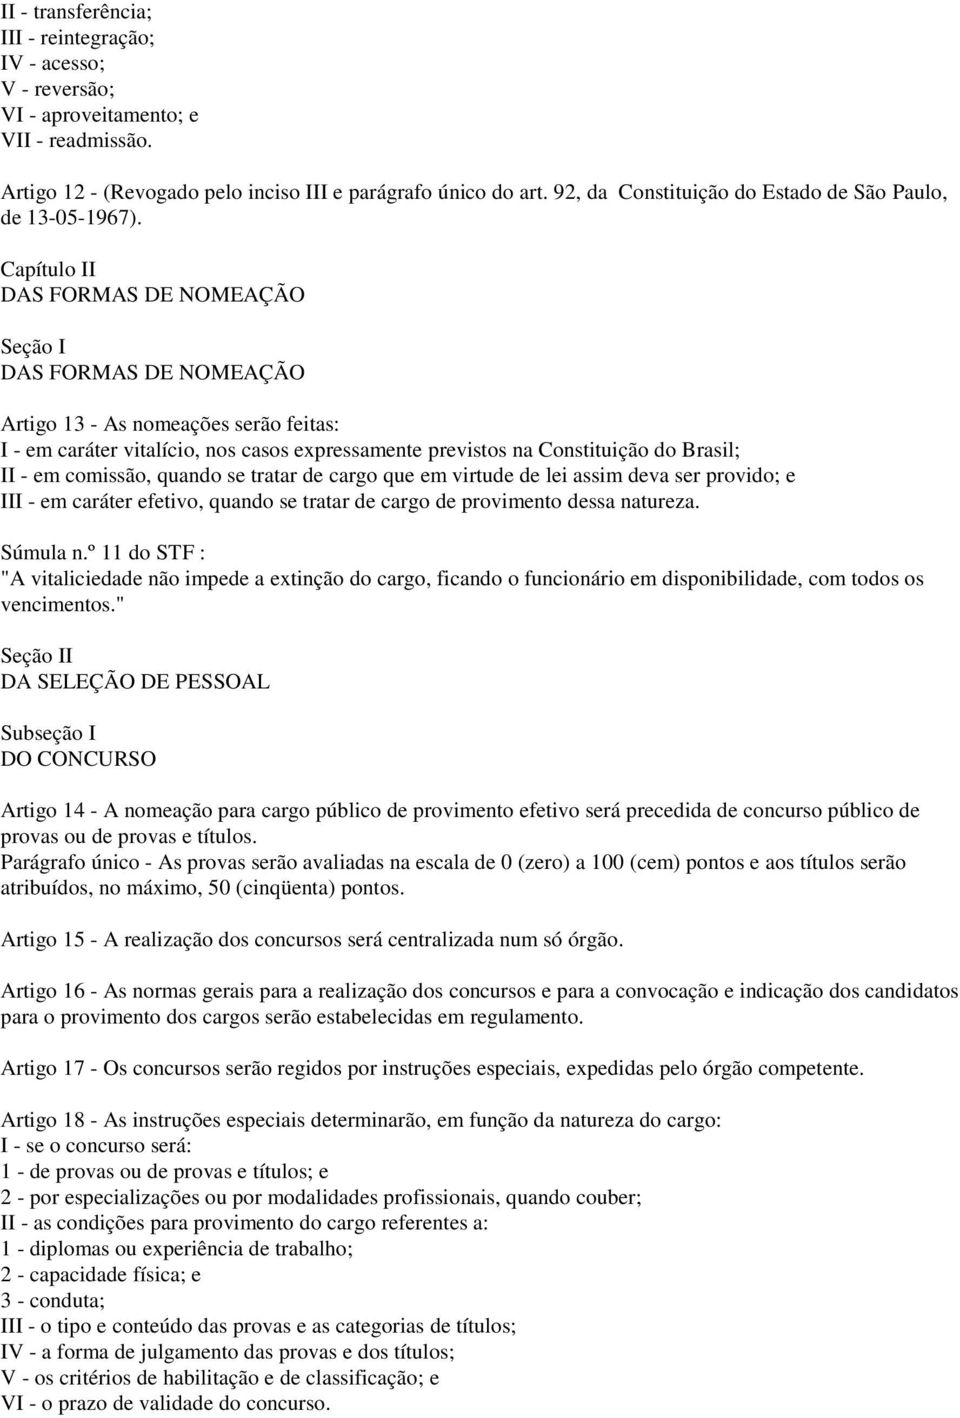 Capítulo II DAS FORMAS DE NOMEAÇÃO Seção I DAS FORMAS DE NOMEAÇÃO Artigo 13 - As nomeações serão feitas: I - em caráter vitalício, nos casos expressamente previstos na Constituição do Brasil; II - em